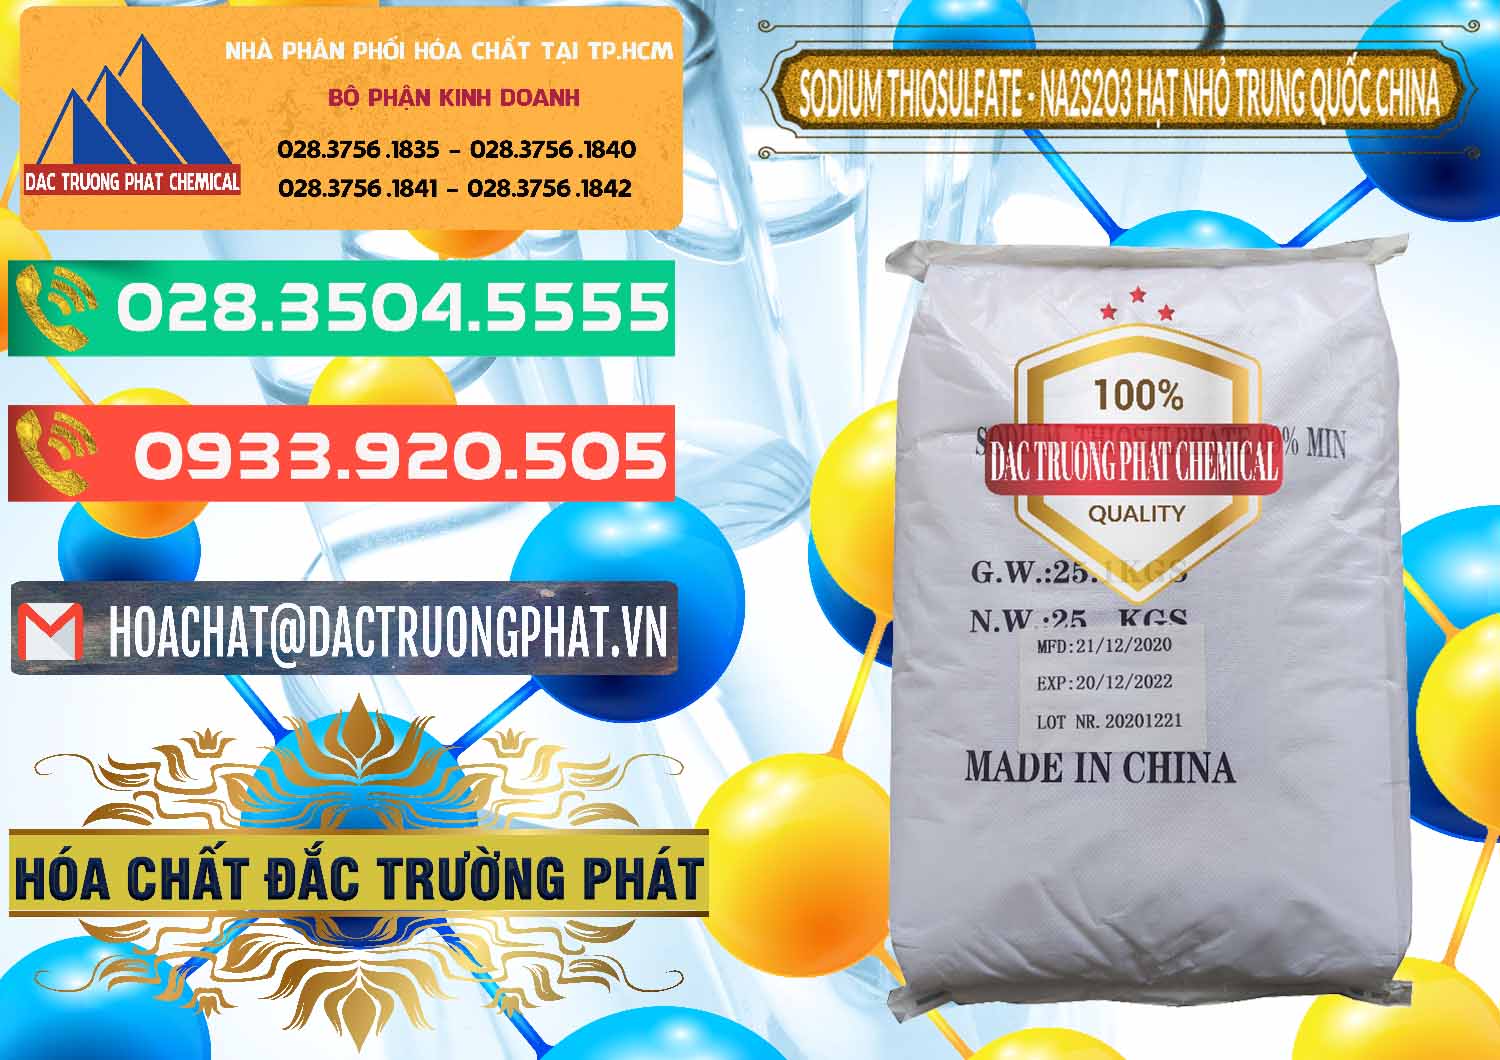 Cty chuyên phân phối _ bán Sodium Thiosulfate - NA2S2O3 Hạt Nhỏ Trung Quốc China - 0204 - Nhập khẩu & phân phối hóa chất tại TP.HCM - congtyhoachat.com.vn